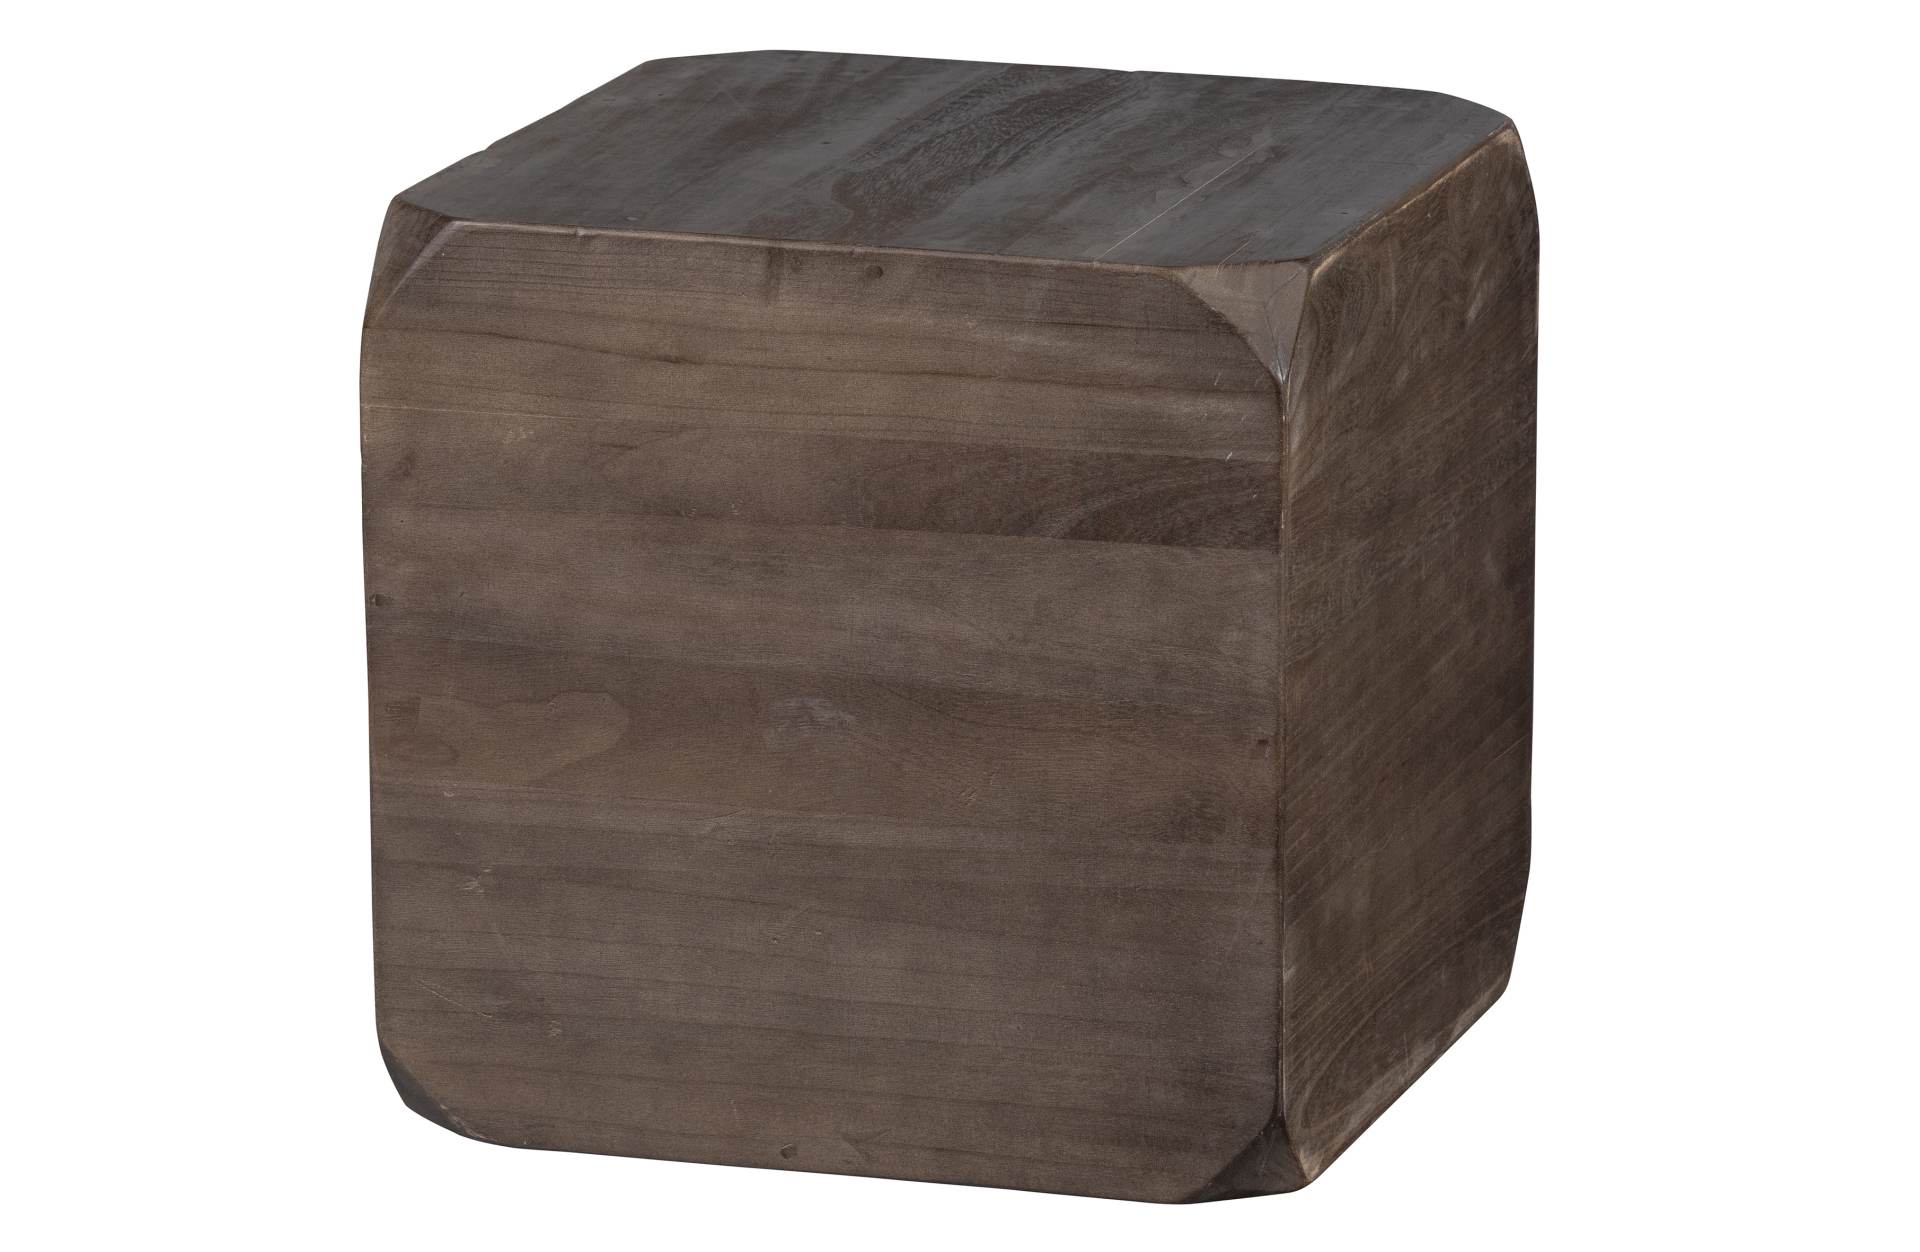 Der Beistelltisch Lio wurde aus Paulowniaholz gefertigt. Der Tisch ist massiv und hat einen dunkelbraunen Farbton.